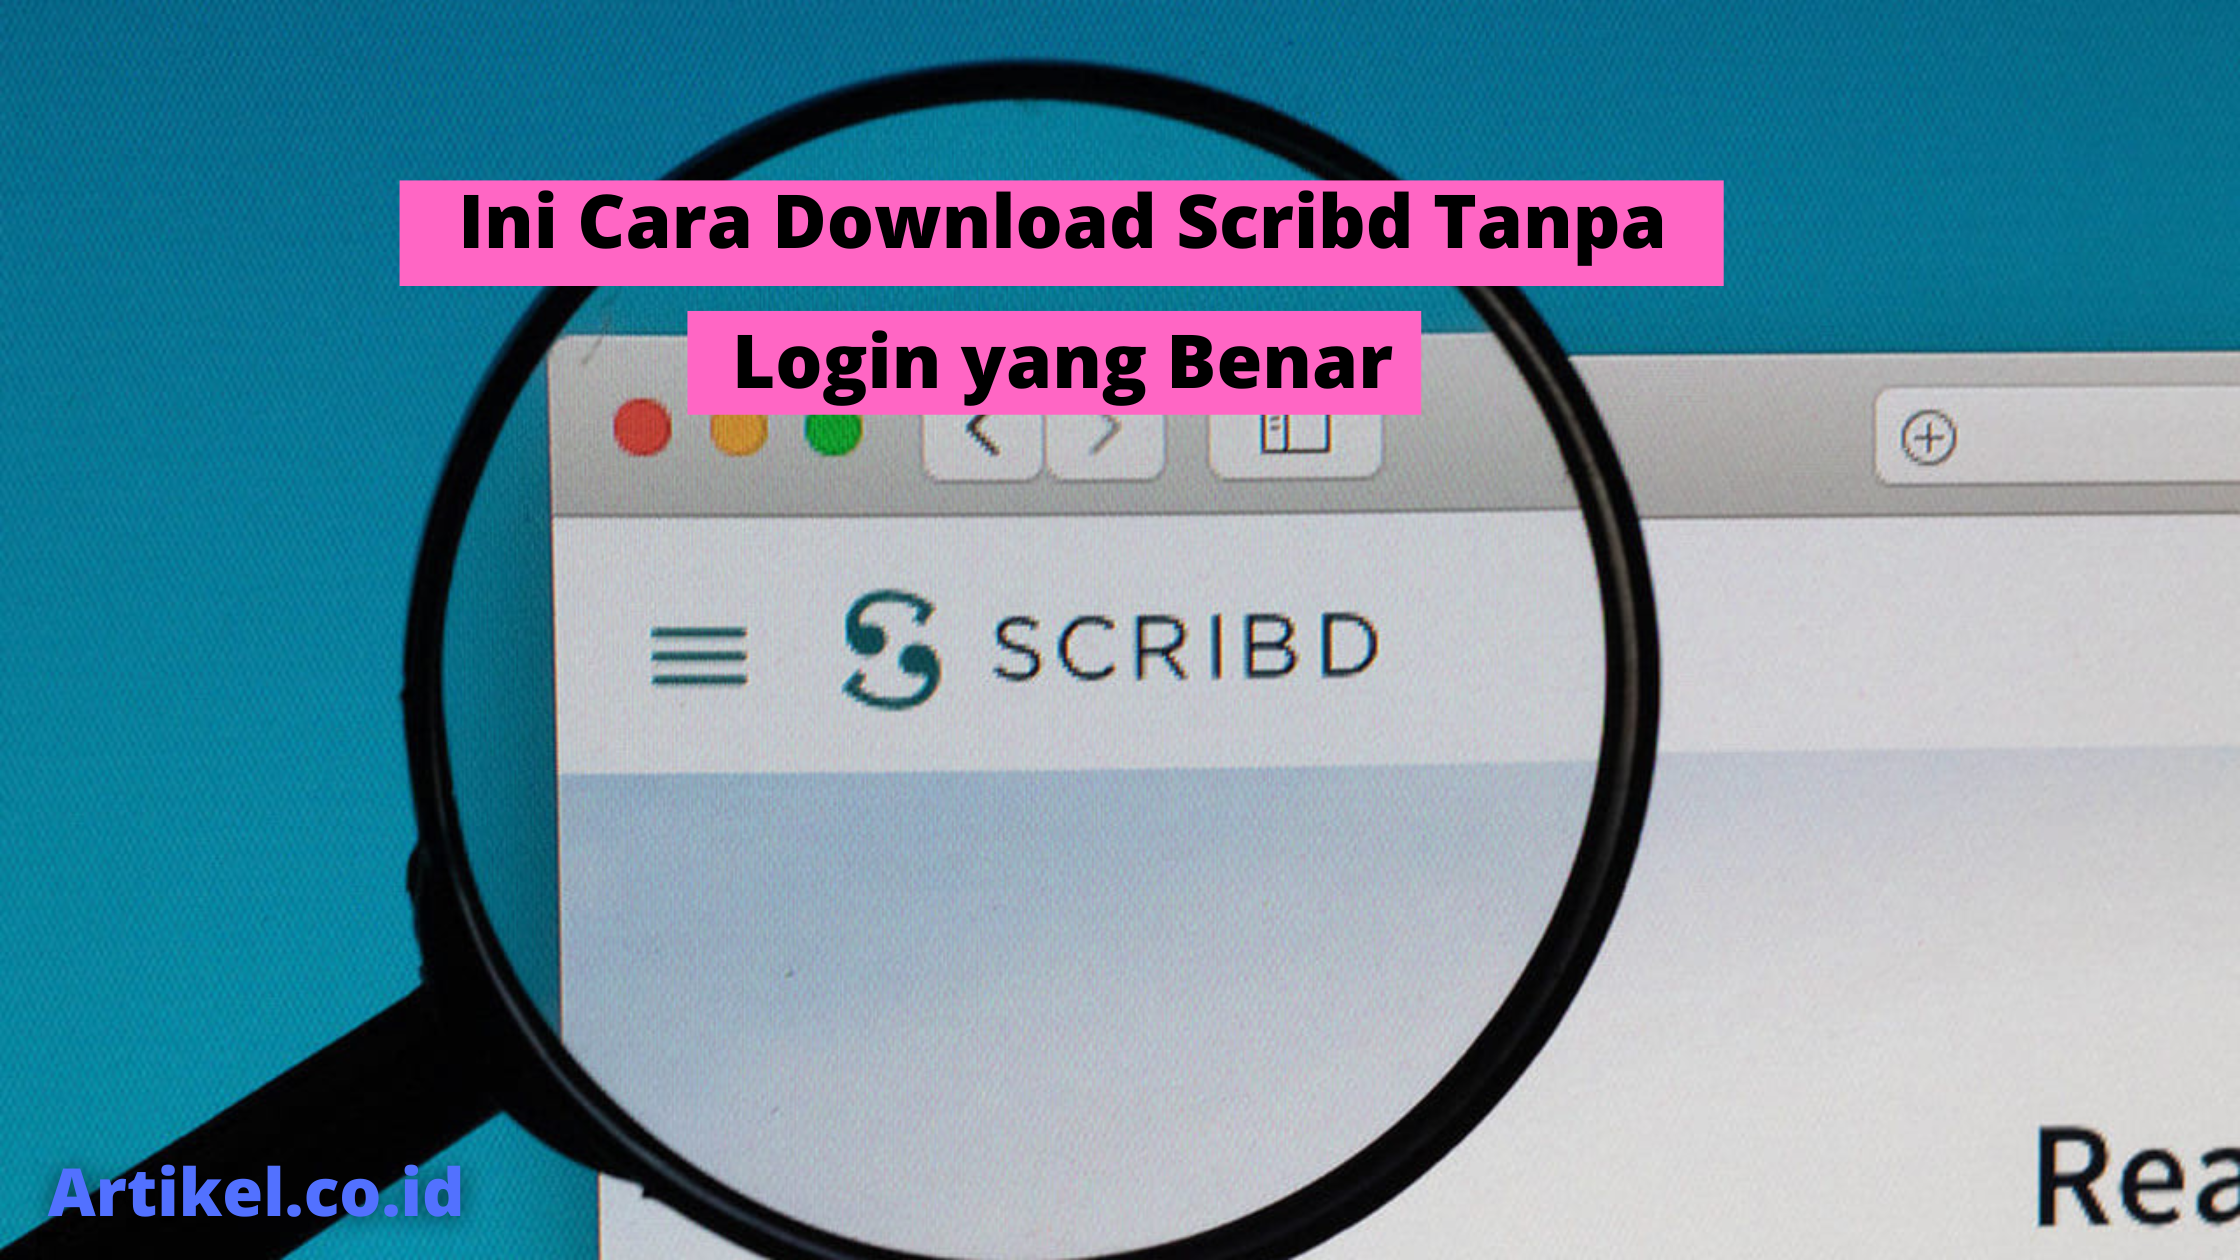 Ini Cara Download Scribd Tanpa Login yang Benar